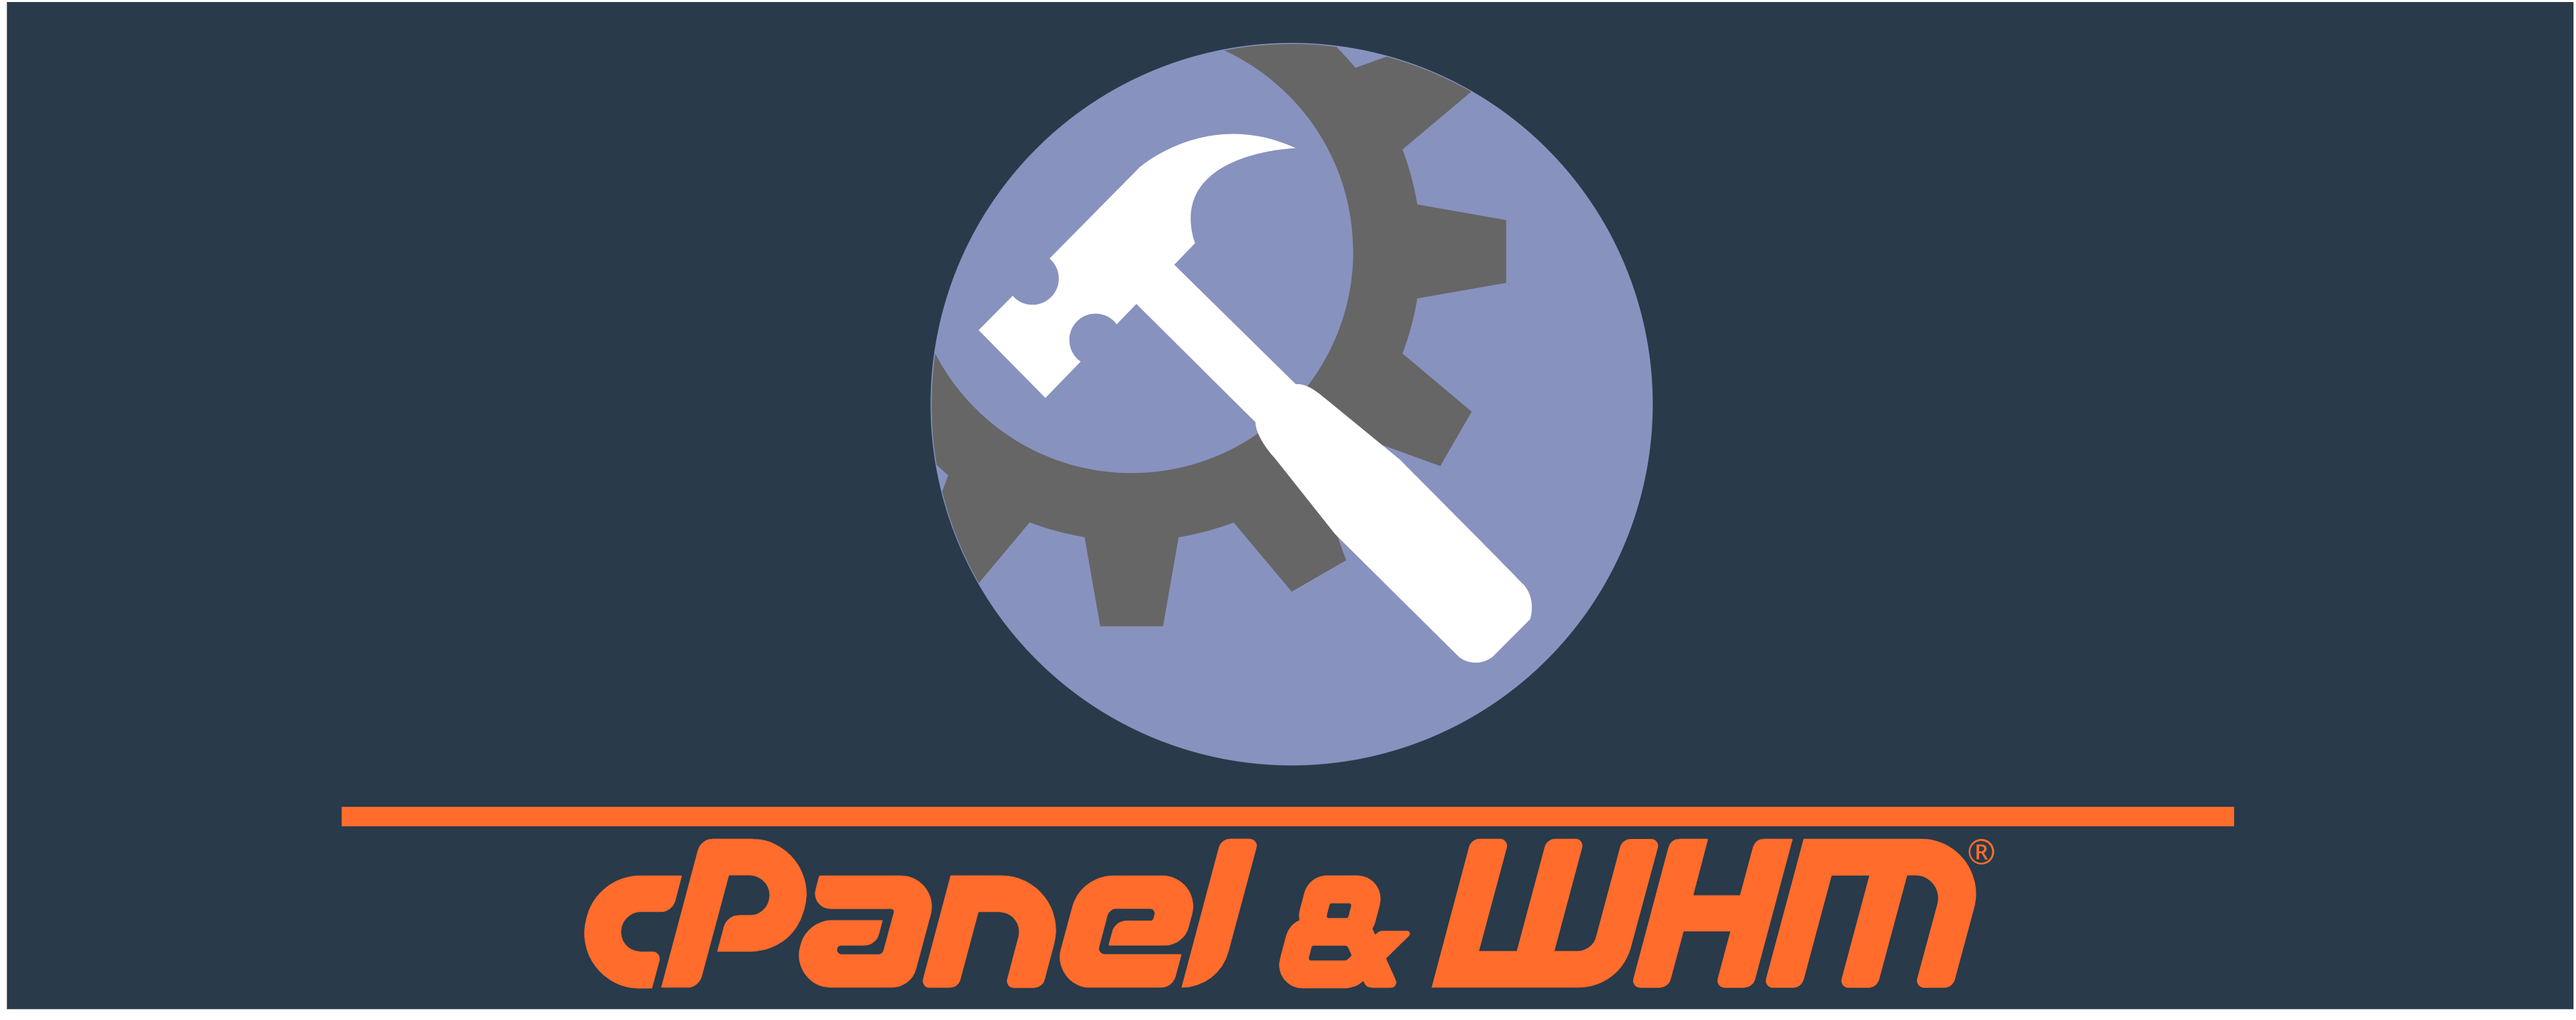 New SSL Standard Hooks for cPanel & WHM Integrators! | cPanel Blog